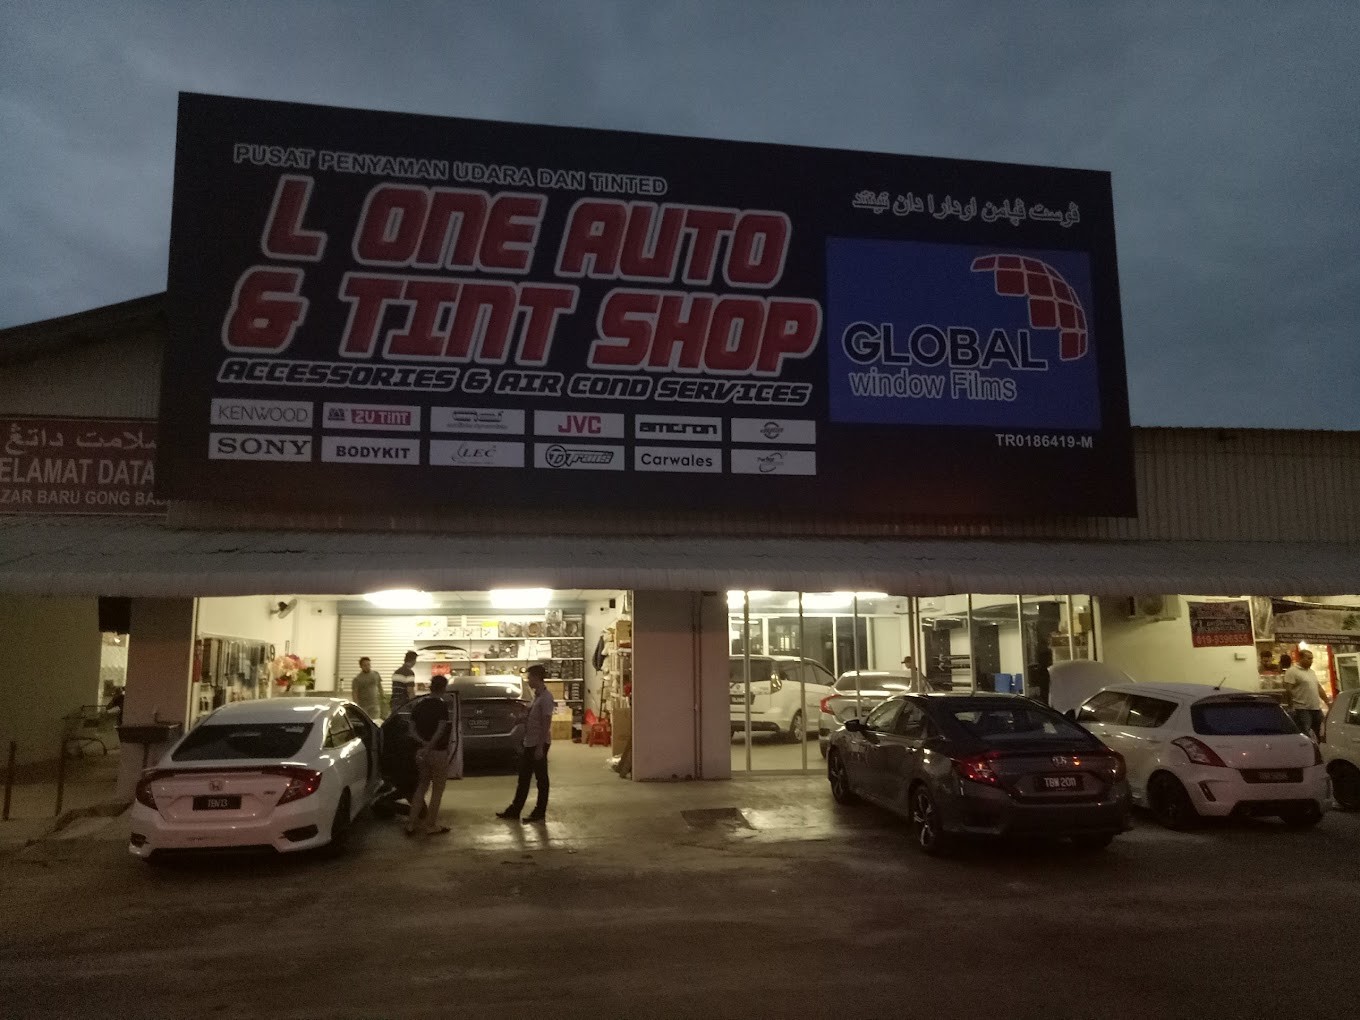 Kedai Tinted Kuala Terengganu L One Auto & Tint Shop